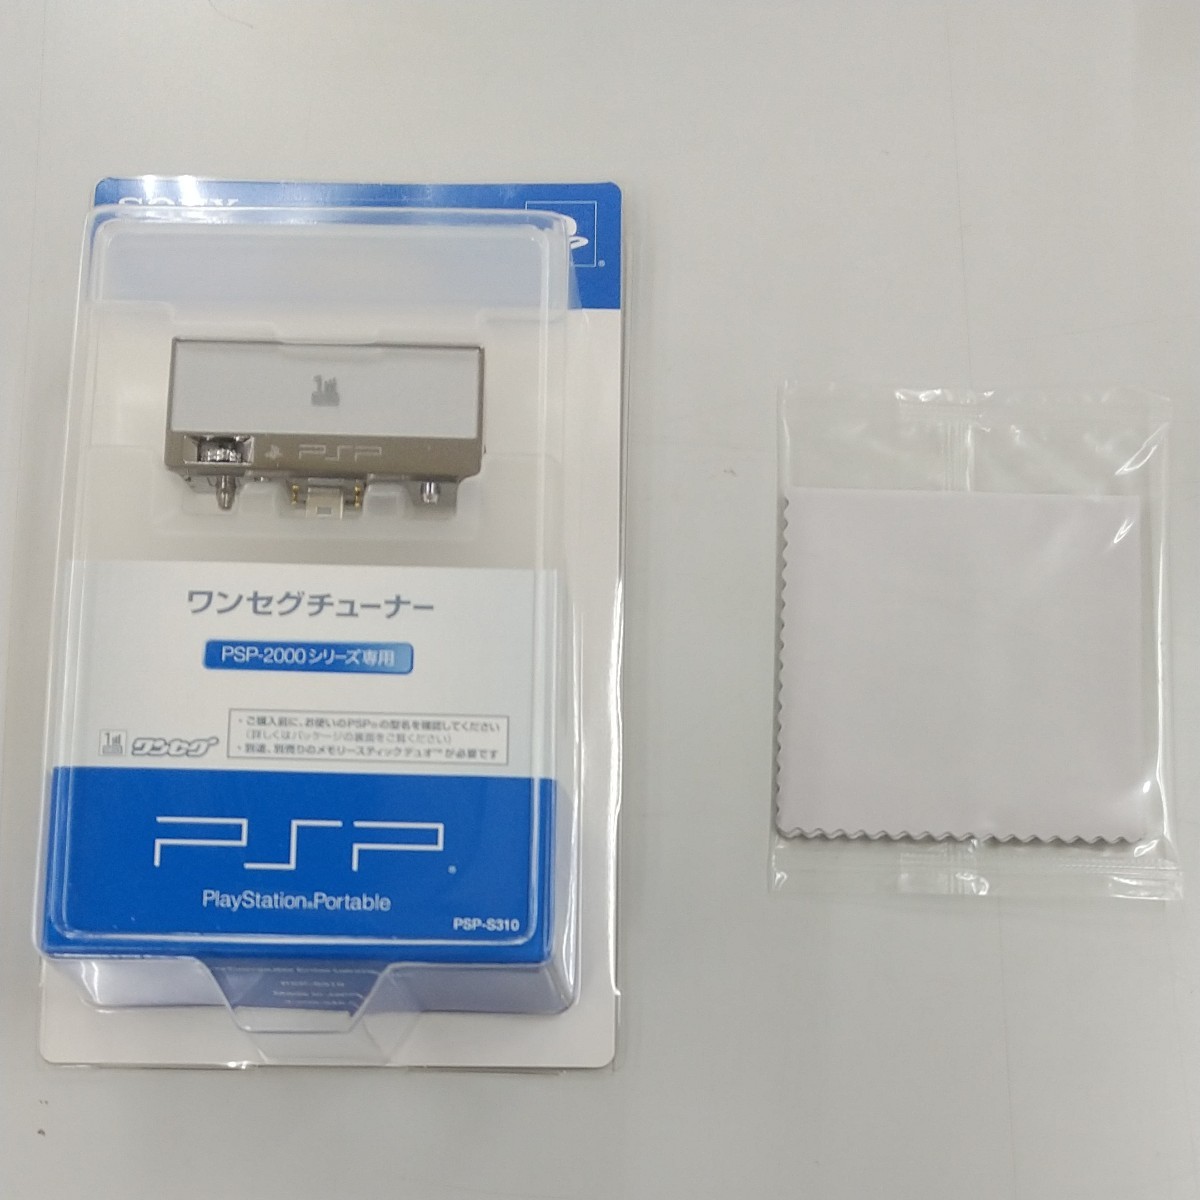 PSP-2000 ワンセグパック (メタリックブルー) 対策前品